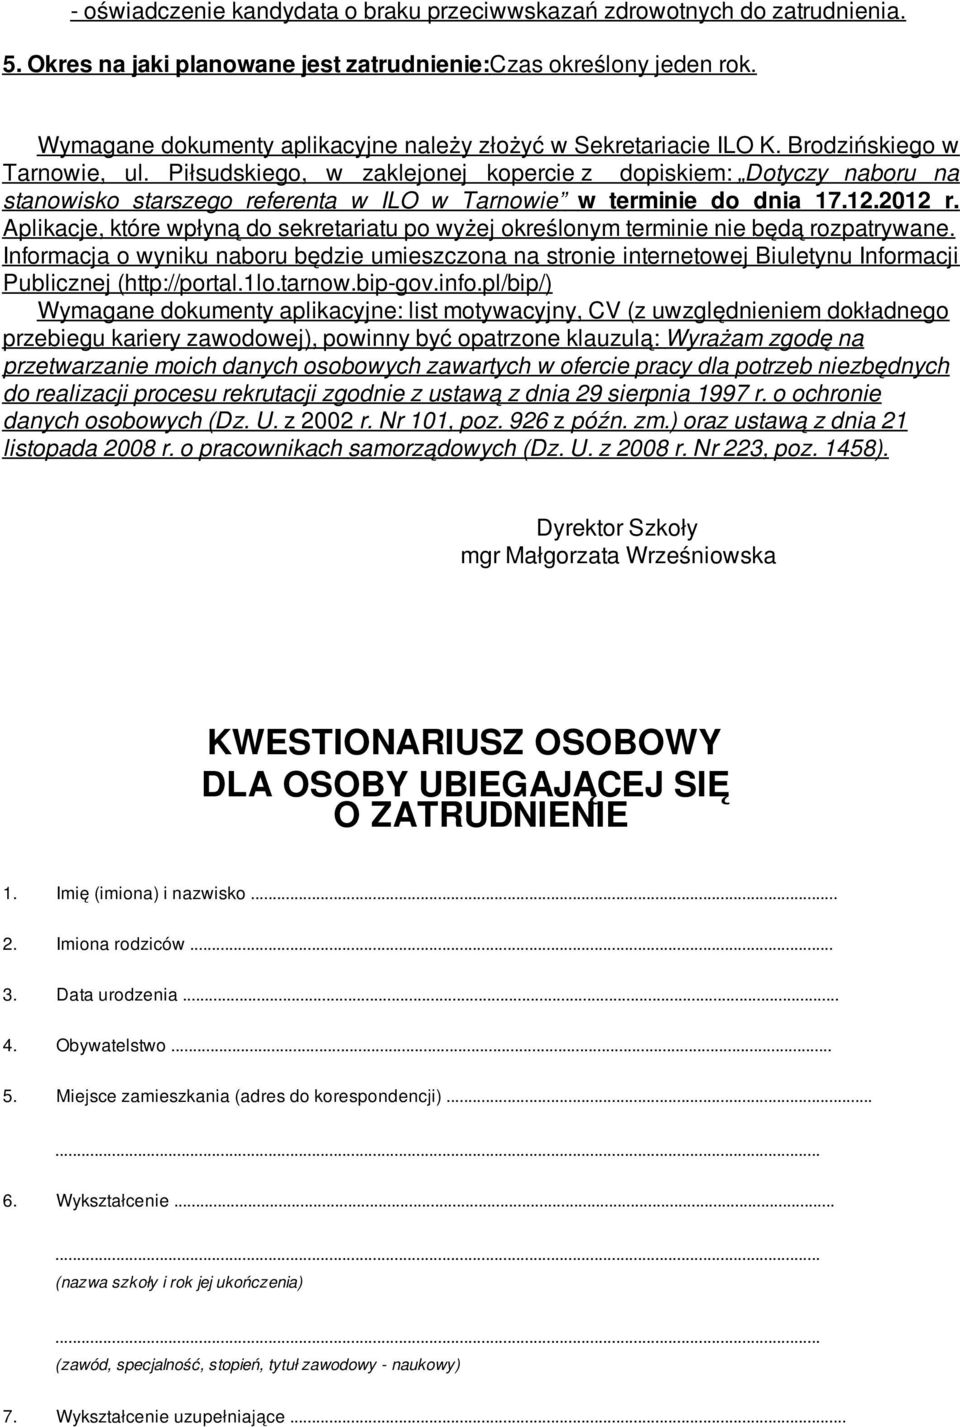 Piłsudskiego, w zaklejonej kopercie z dopiskiem: Dotyczy naboru na stanowisko starszego referenta w ILO w Tarnowie w terminie do dnia 17.12.2012 r.